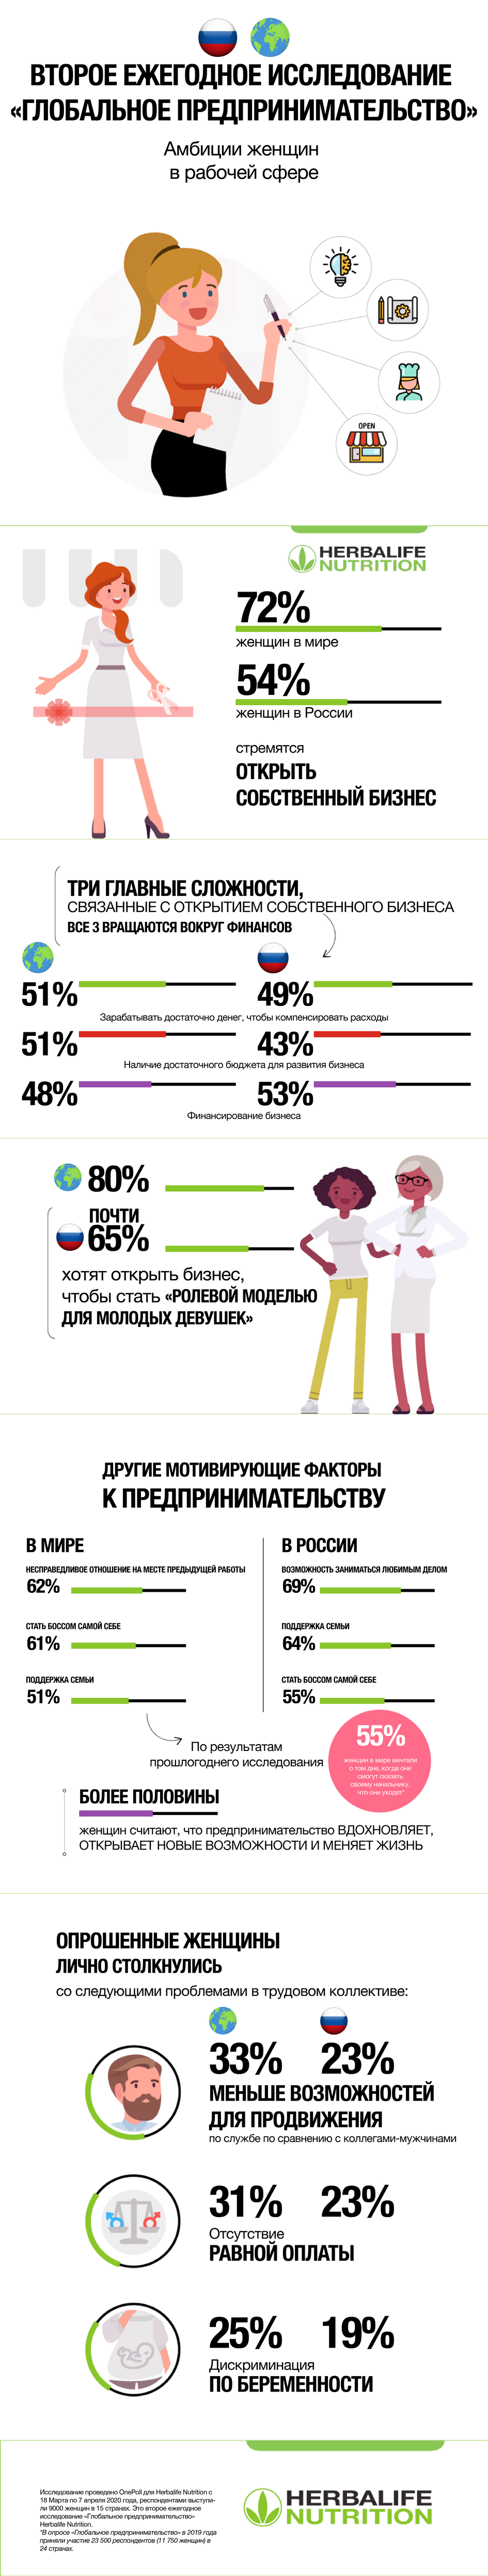 Почему больше половины женщин в России хотят открыть свое дело